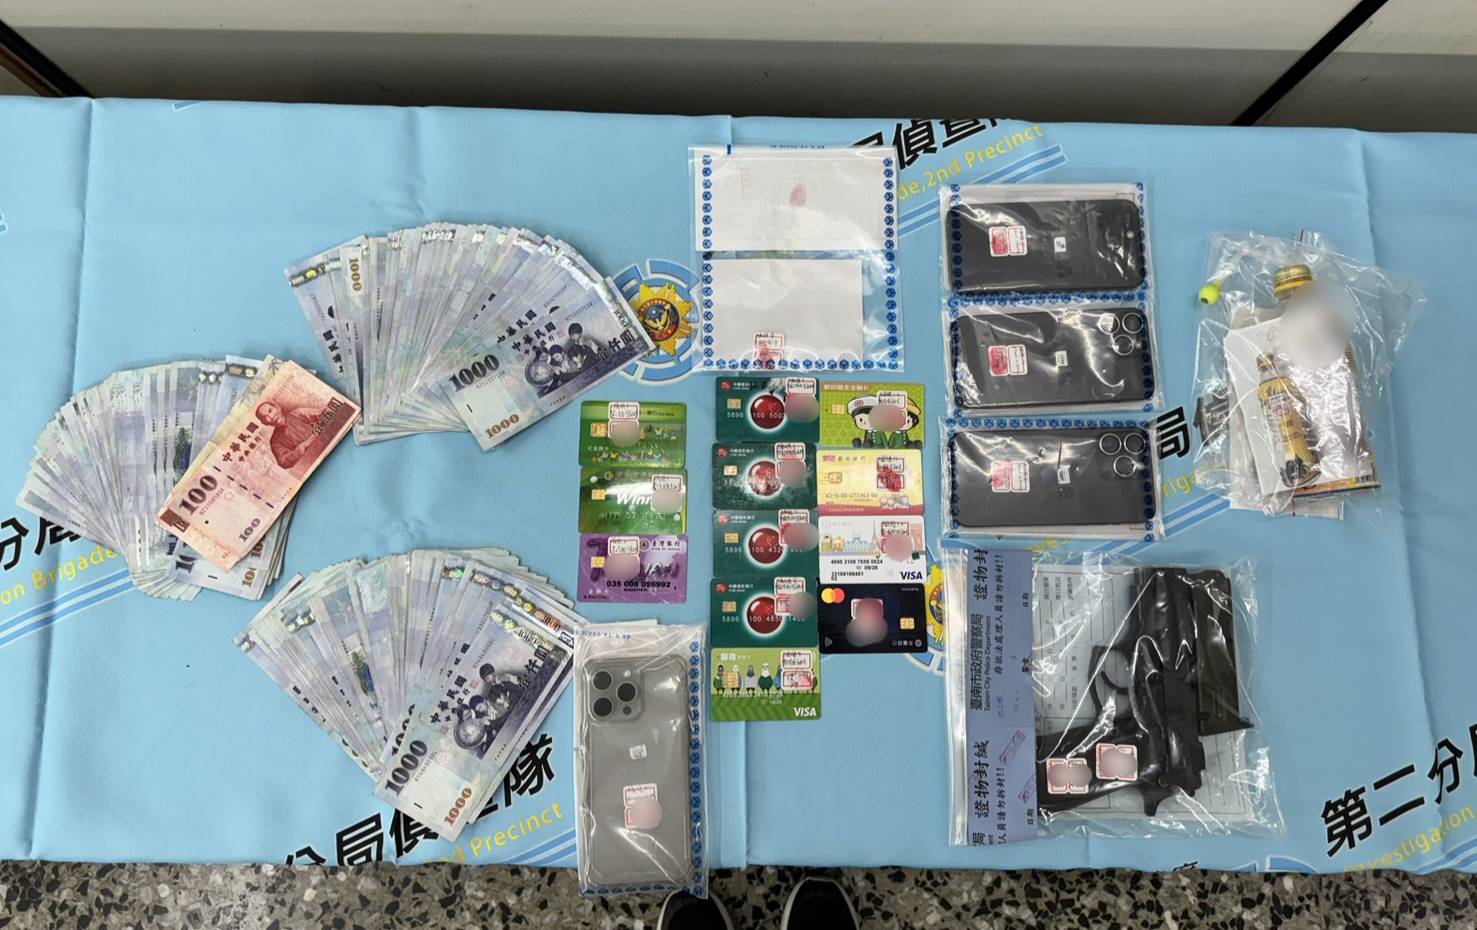 警方在阮男租屋处内查获9张不明金融卡、现金近15万元，以及1把黑色改造手枪、弹匣及毒品等物。图／读者提供